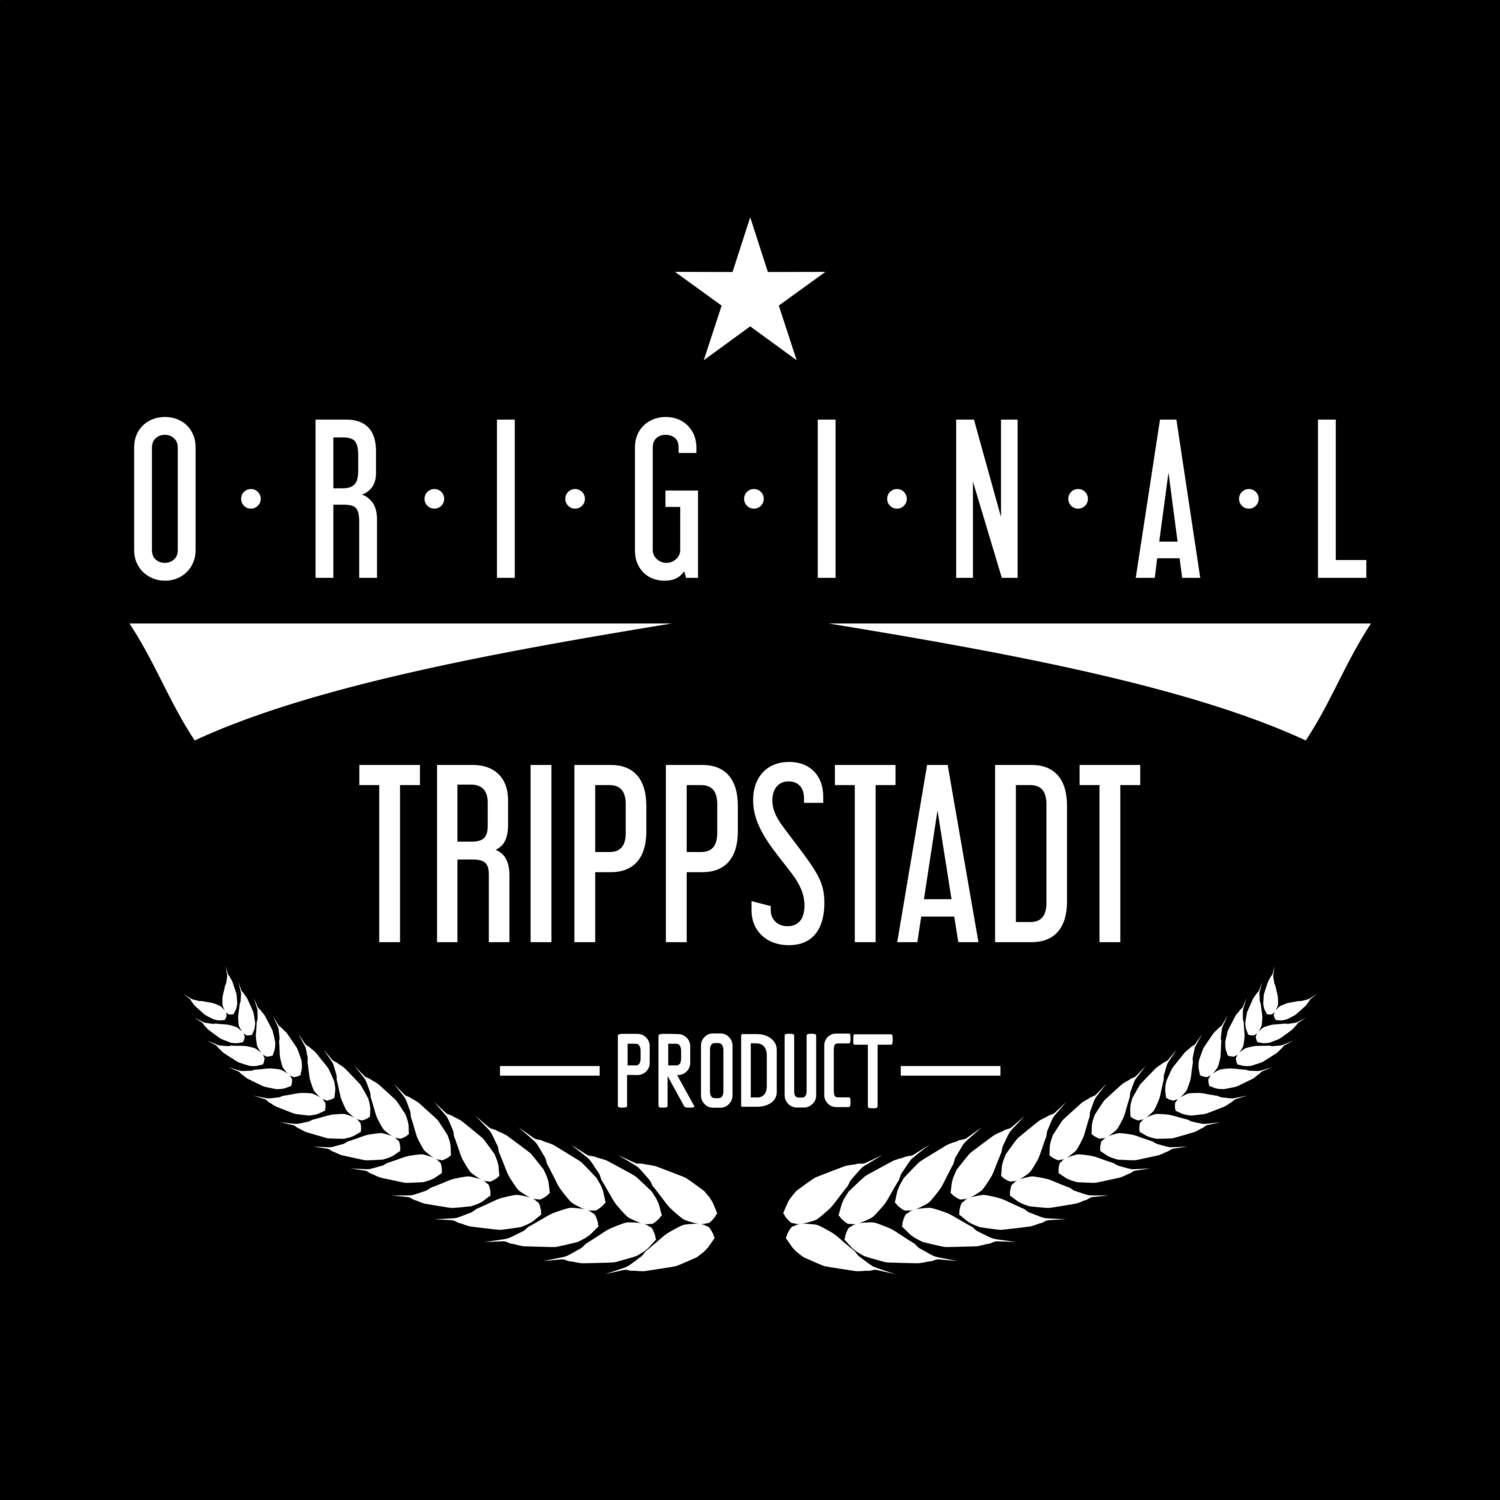 Trippstadt T-Shirt »Original Product«